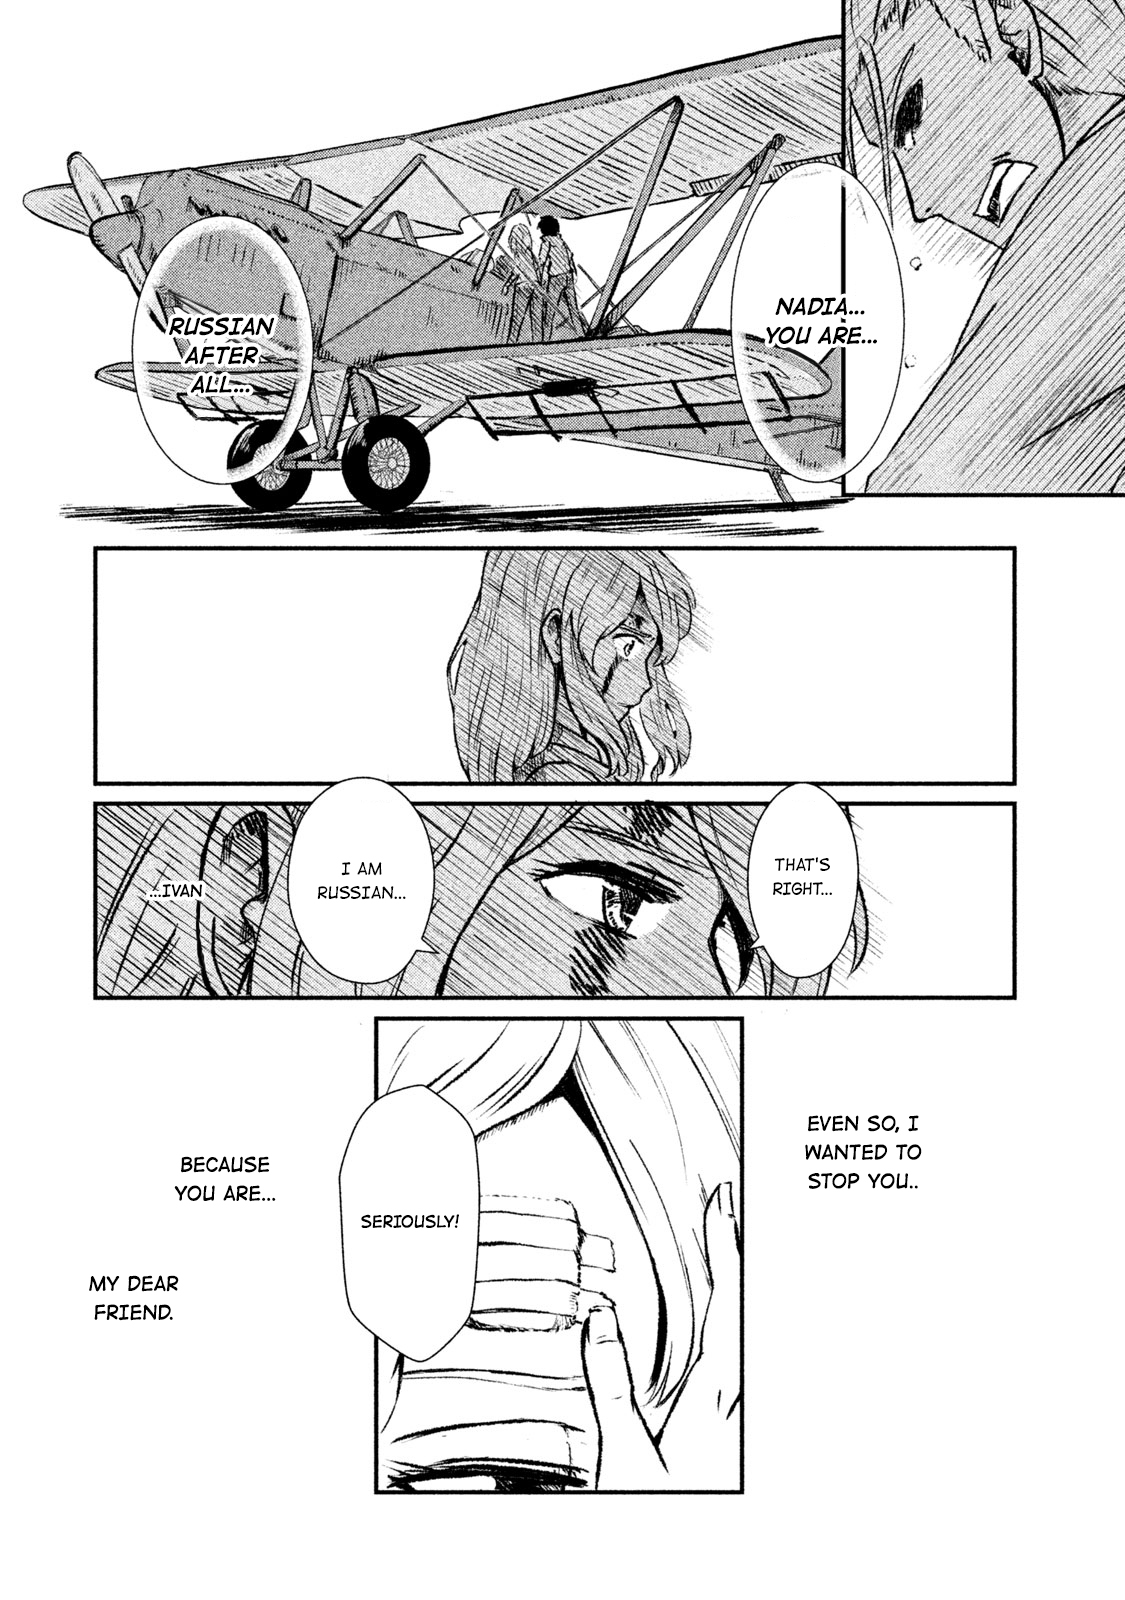 Shirayuri wa Ake ni Somaranai Vol. 1 Ch. 1 First Flight